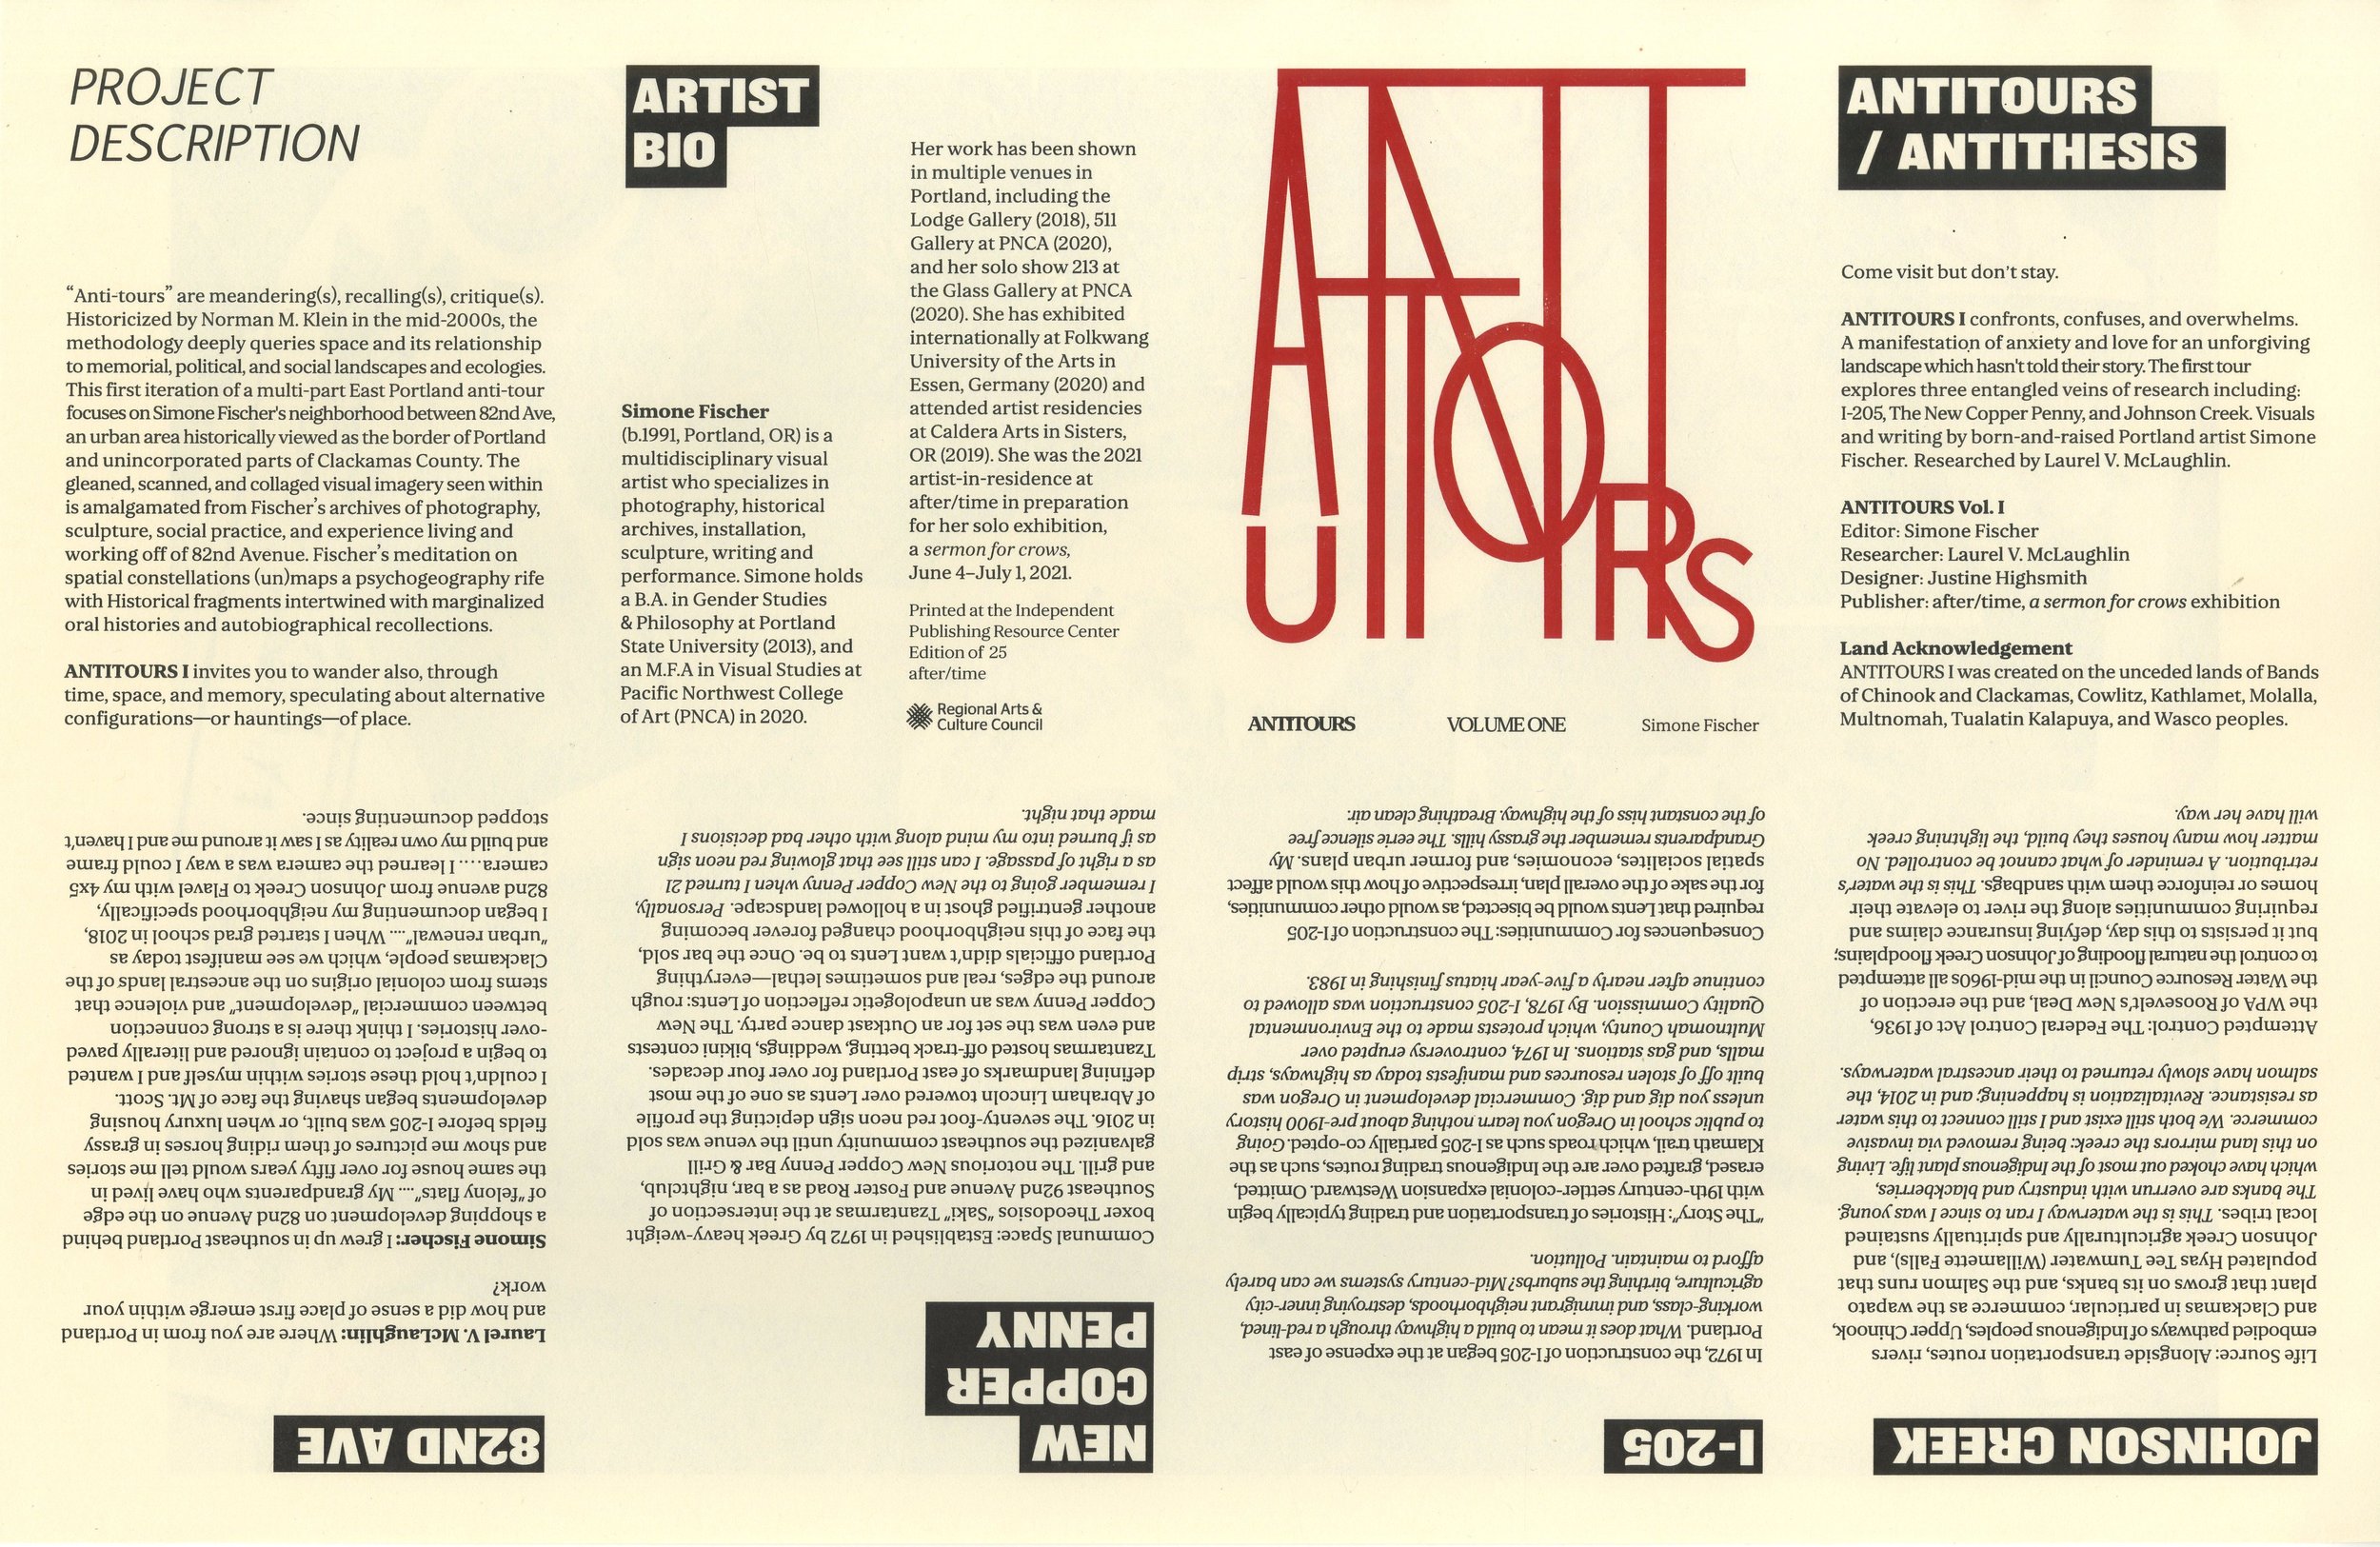 ANTITOURS publication design for artist Simone Fischer, 2021